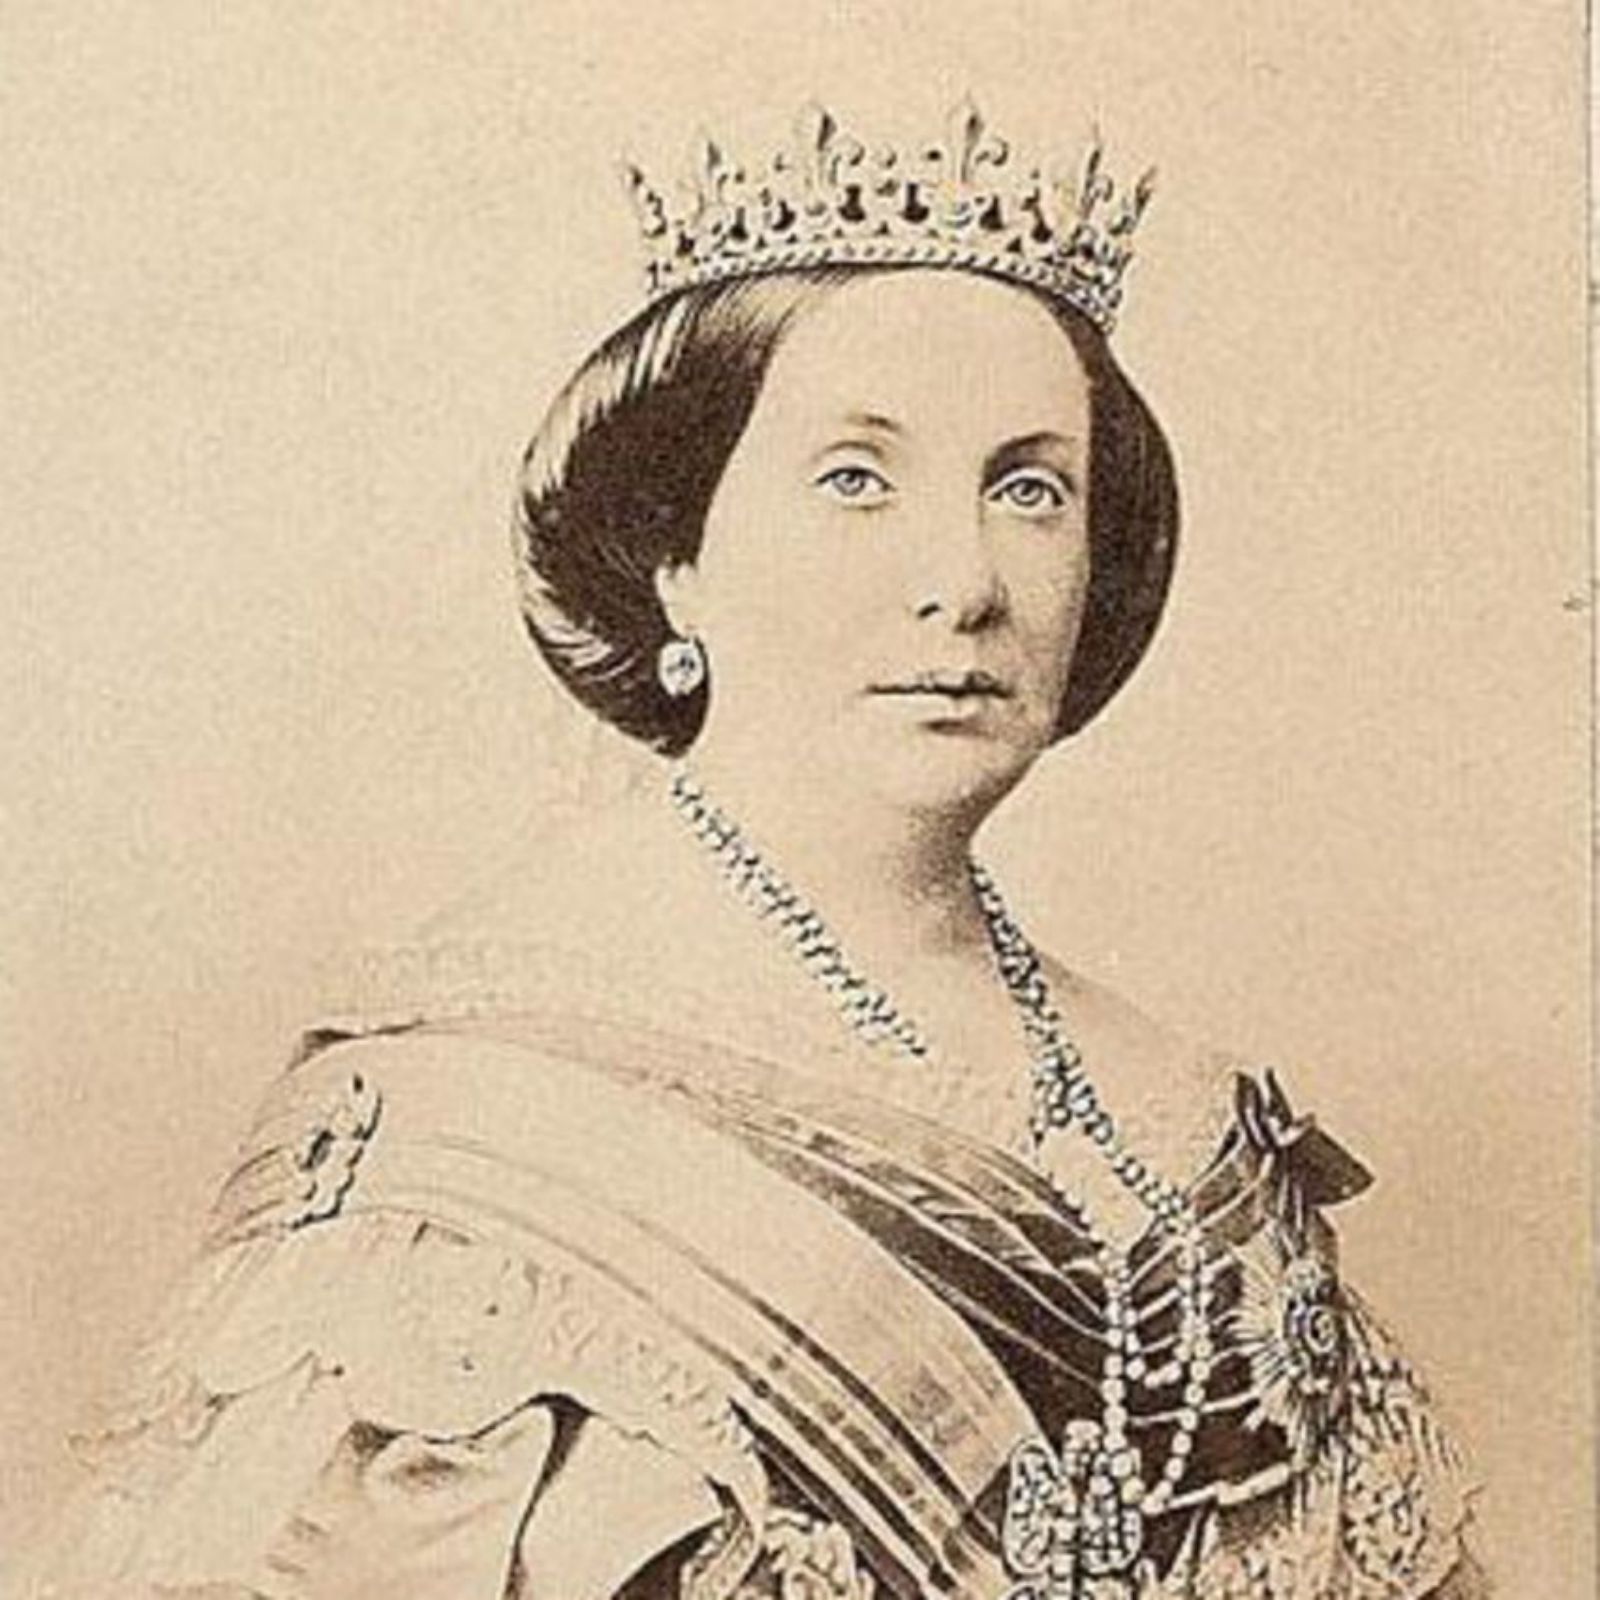 La reina: Retrato de Isabel II realizado por Charles Clifford.